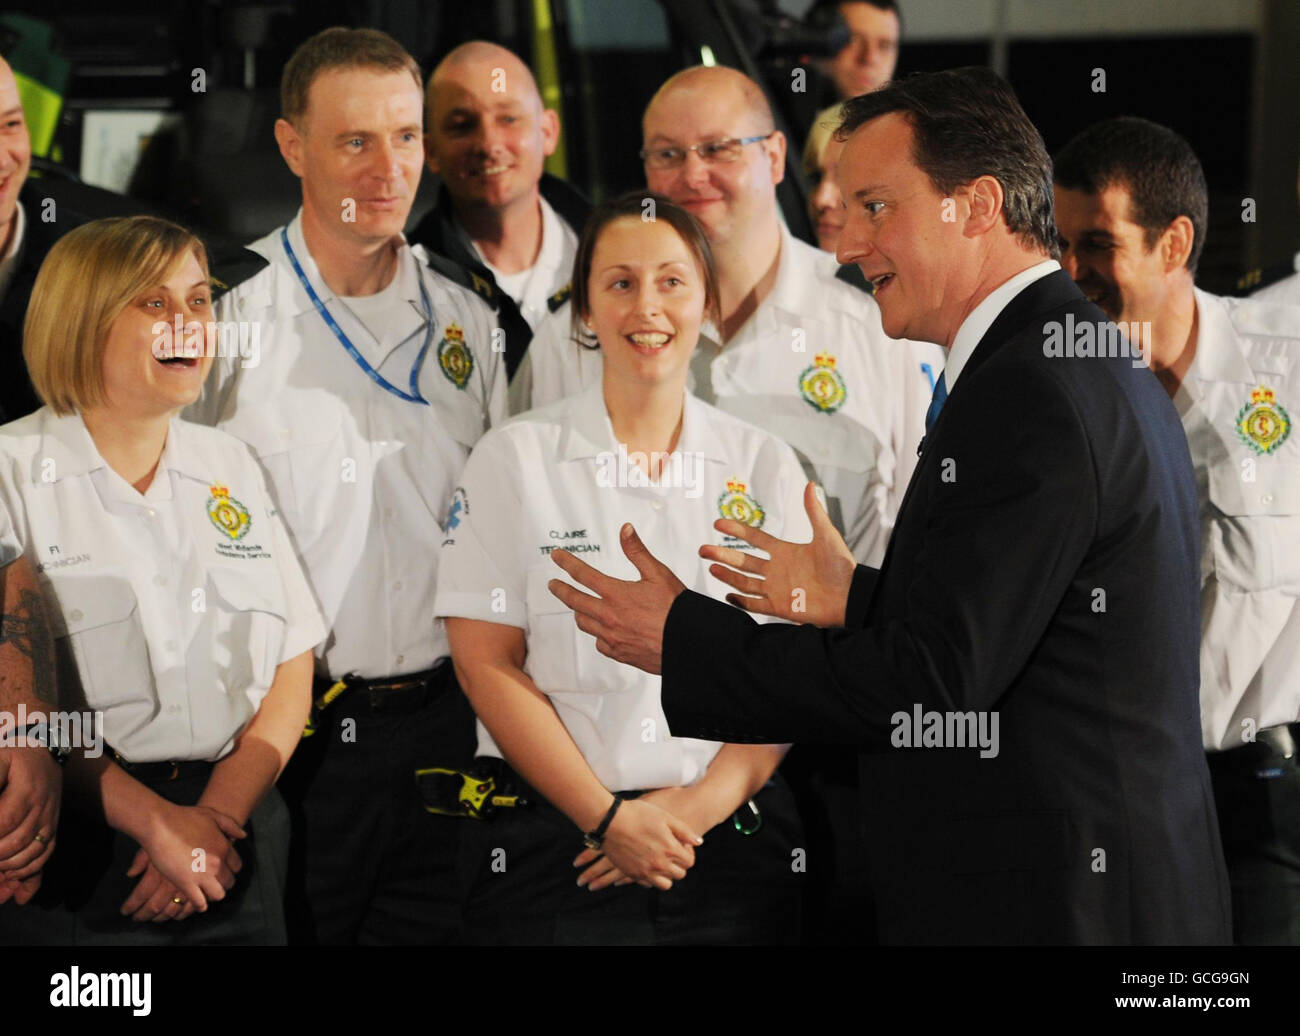 Il leader del Partito conservatore David Cameron incontra gli equipaggi delle ambulanze presso il West Midlands Ambulance Service di Dudley mentre ha fatto una campagna elettorale per tutta la notte in una spinta finale per i voti mentre si avvicina il giorno delle elezioni generali. Foto Stock